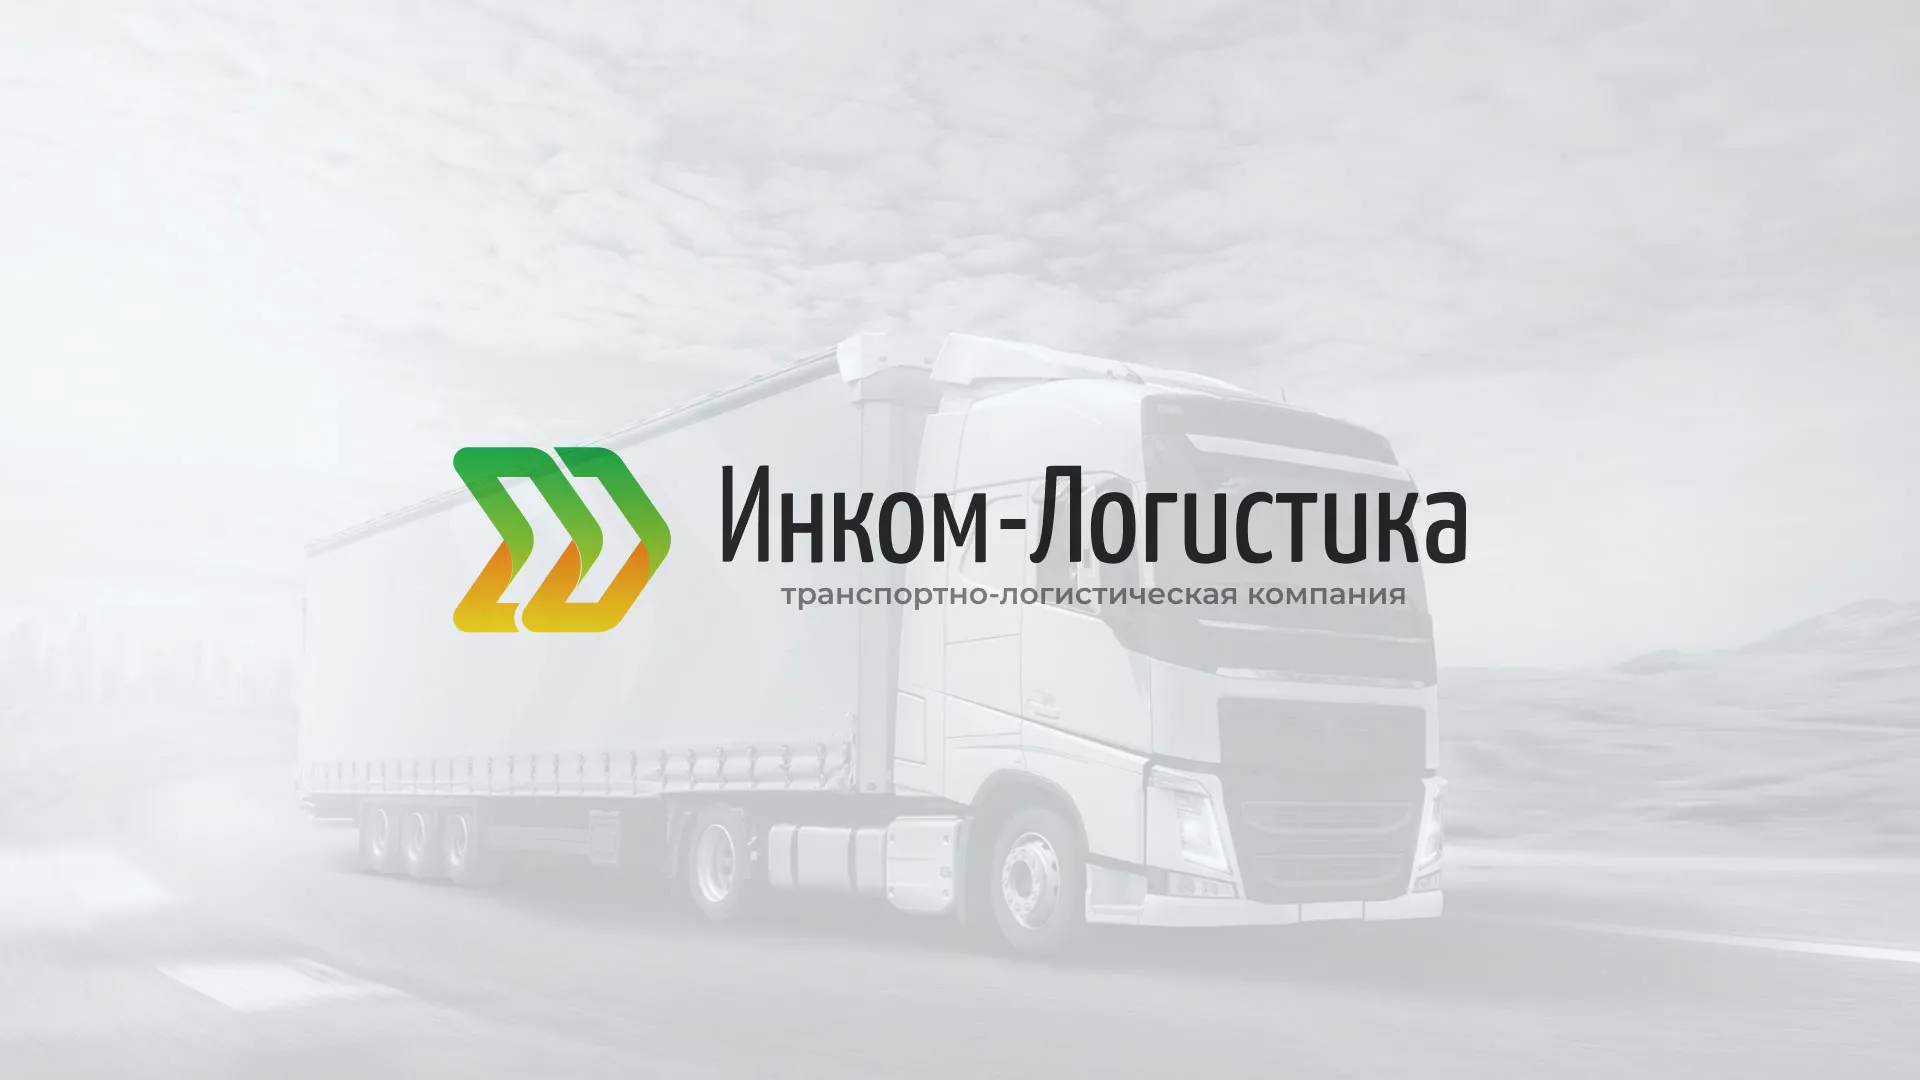 Разработка логотипа и сайта компании «Инком-Логистика» в Свердловском